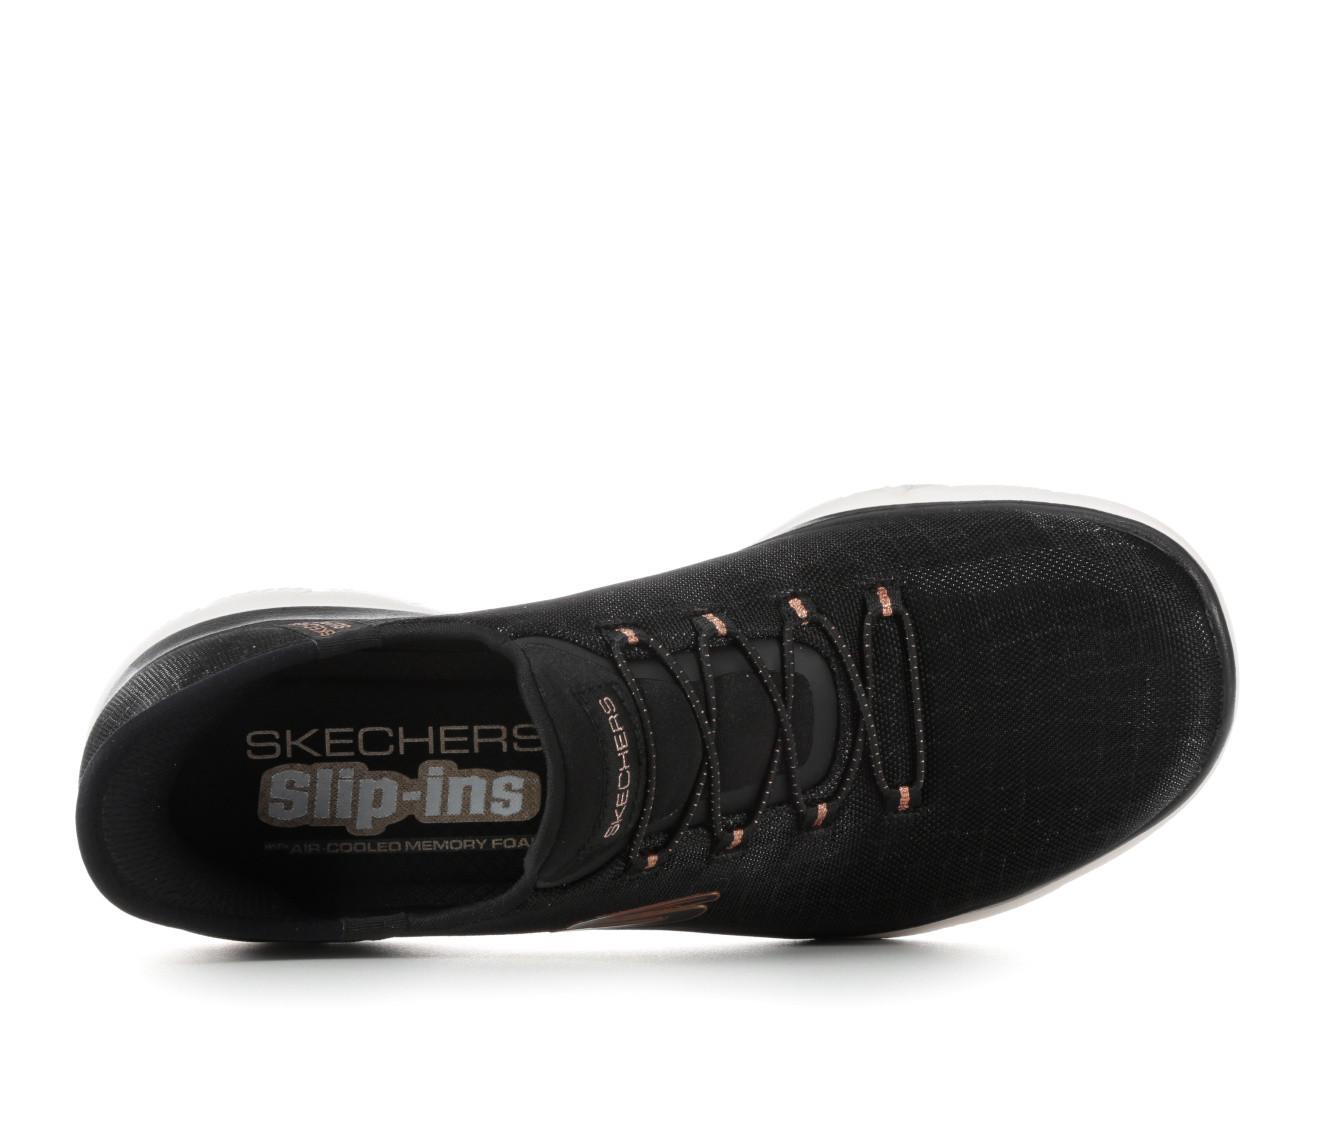 Women's Skechers 150128 Summits Classy Nights Slip-Ins Sneakers